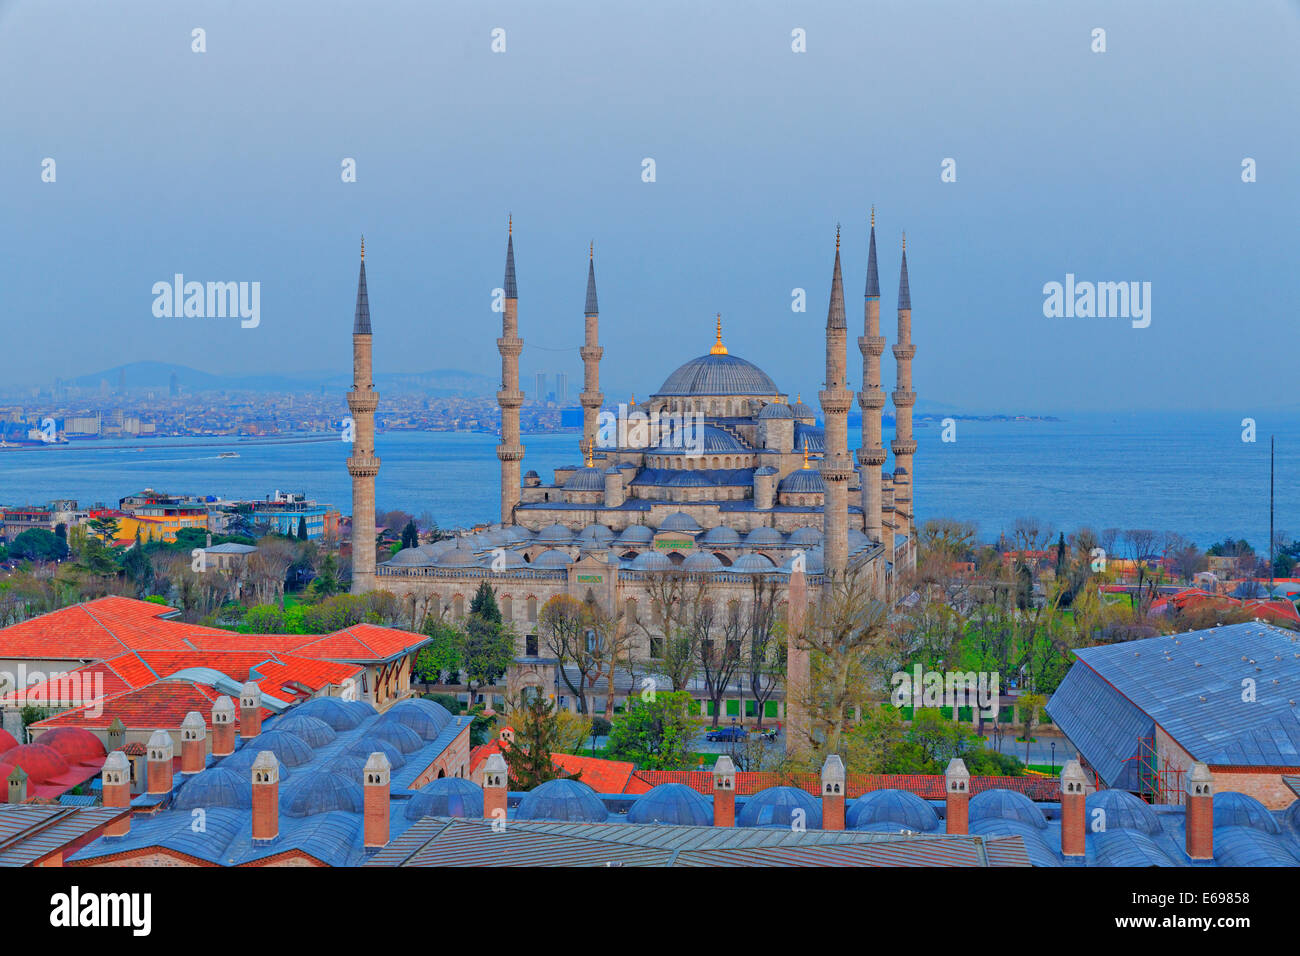 Blaue Moschee, Sultan Ahmed Mosque, Sultanahmet Camii, Sultanahmet, Istanbul, Europäische Side, Türkei Stockfoto